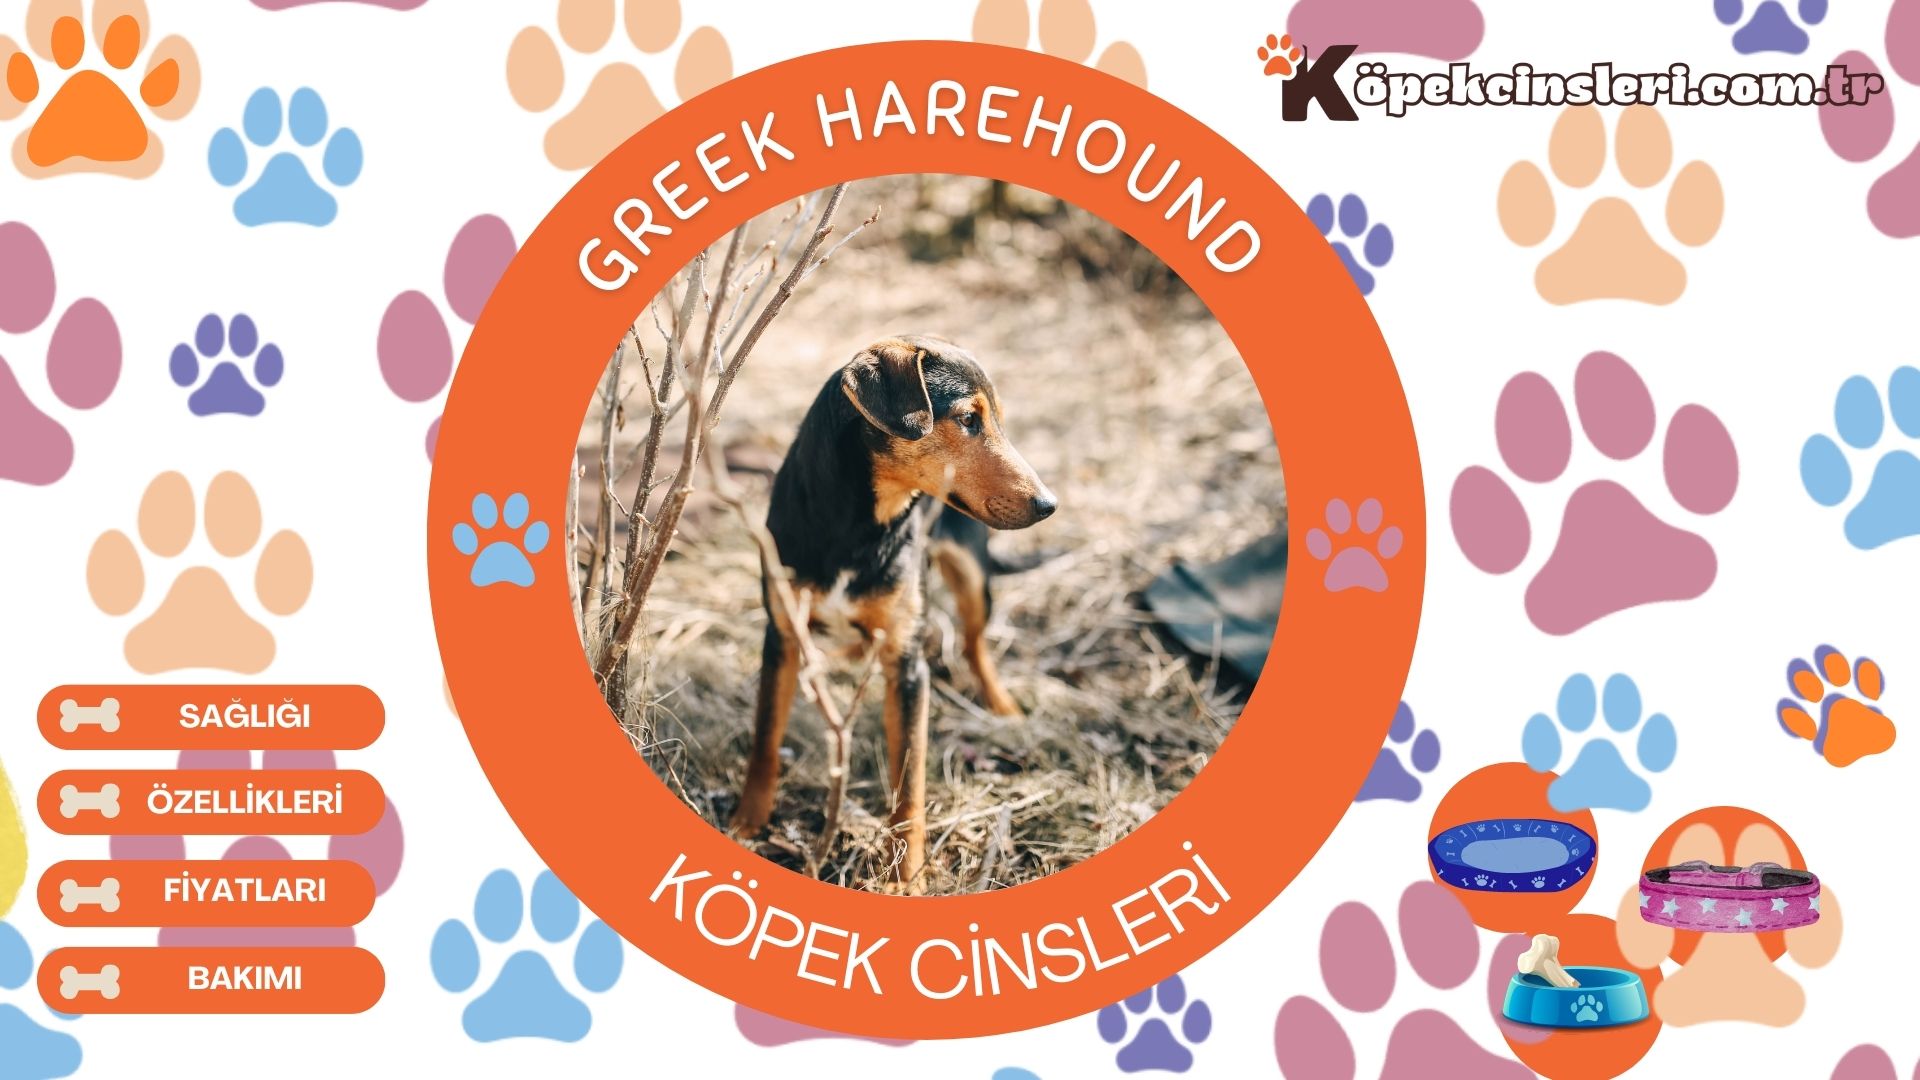 Greek Harehound